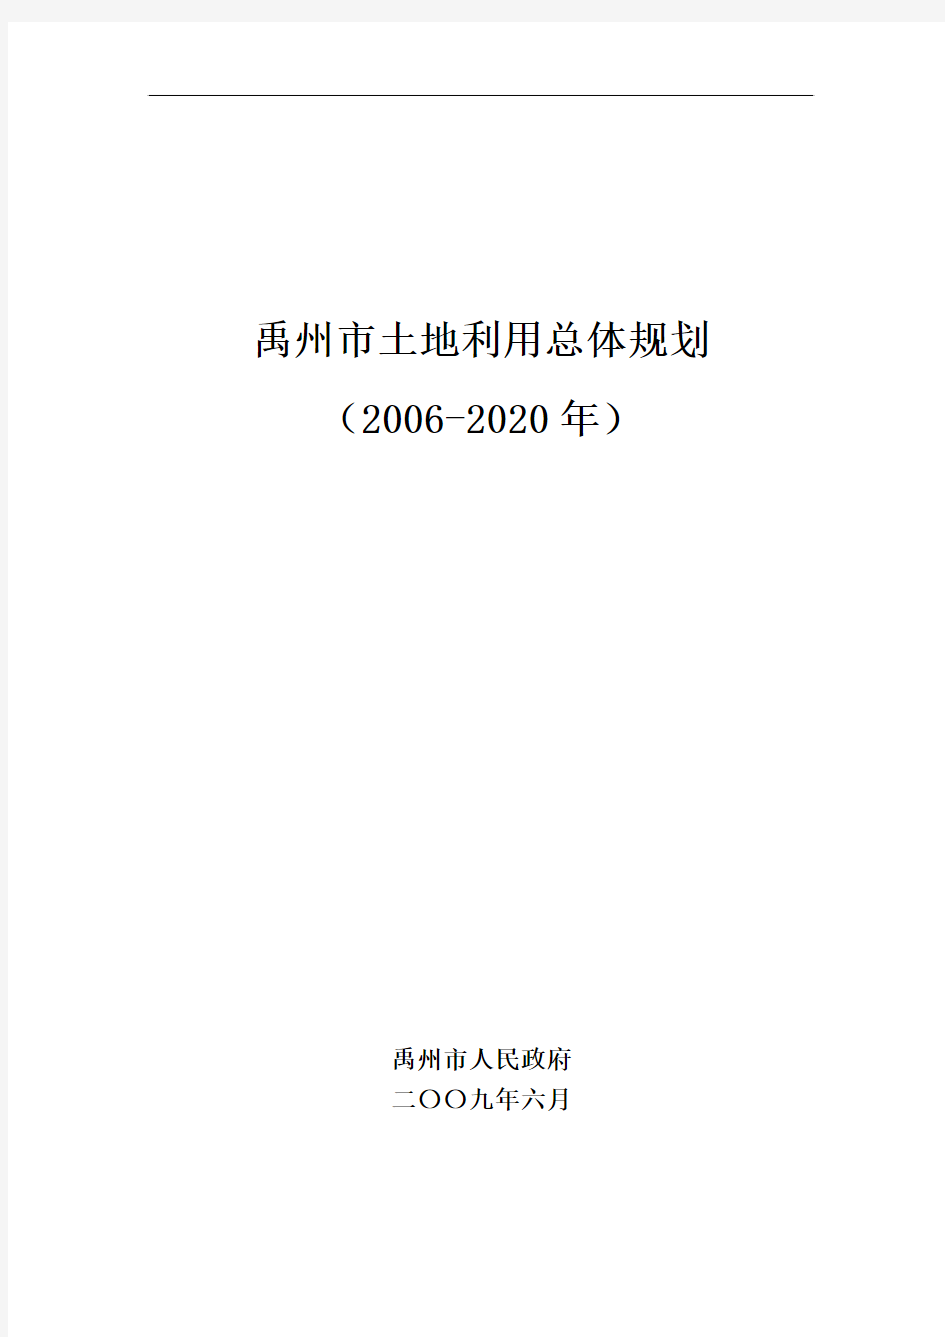 《禹州市土地利用总体规划(2006-2020年)》